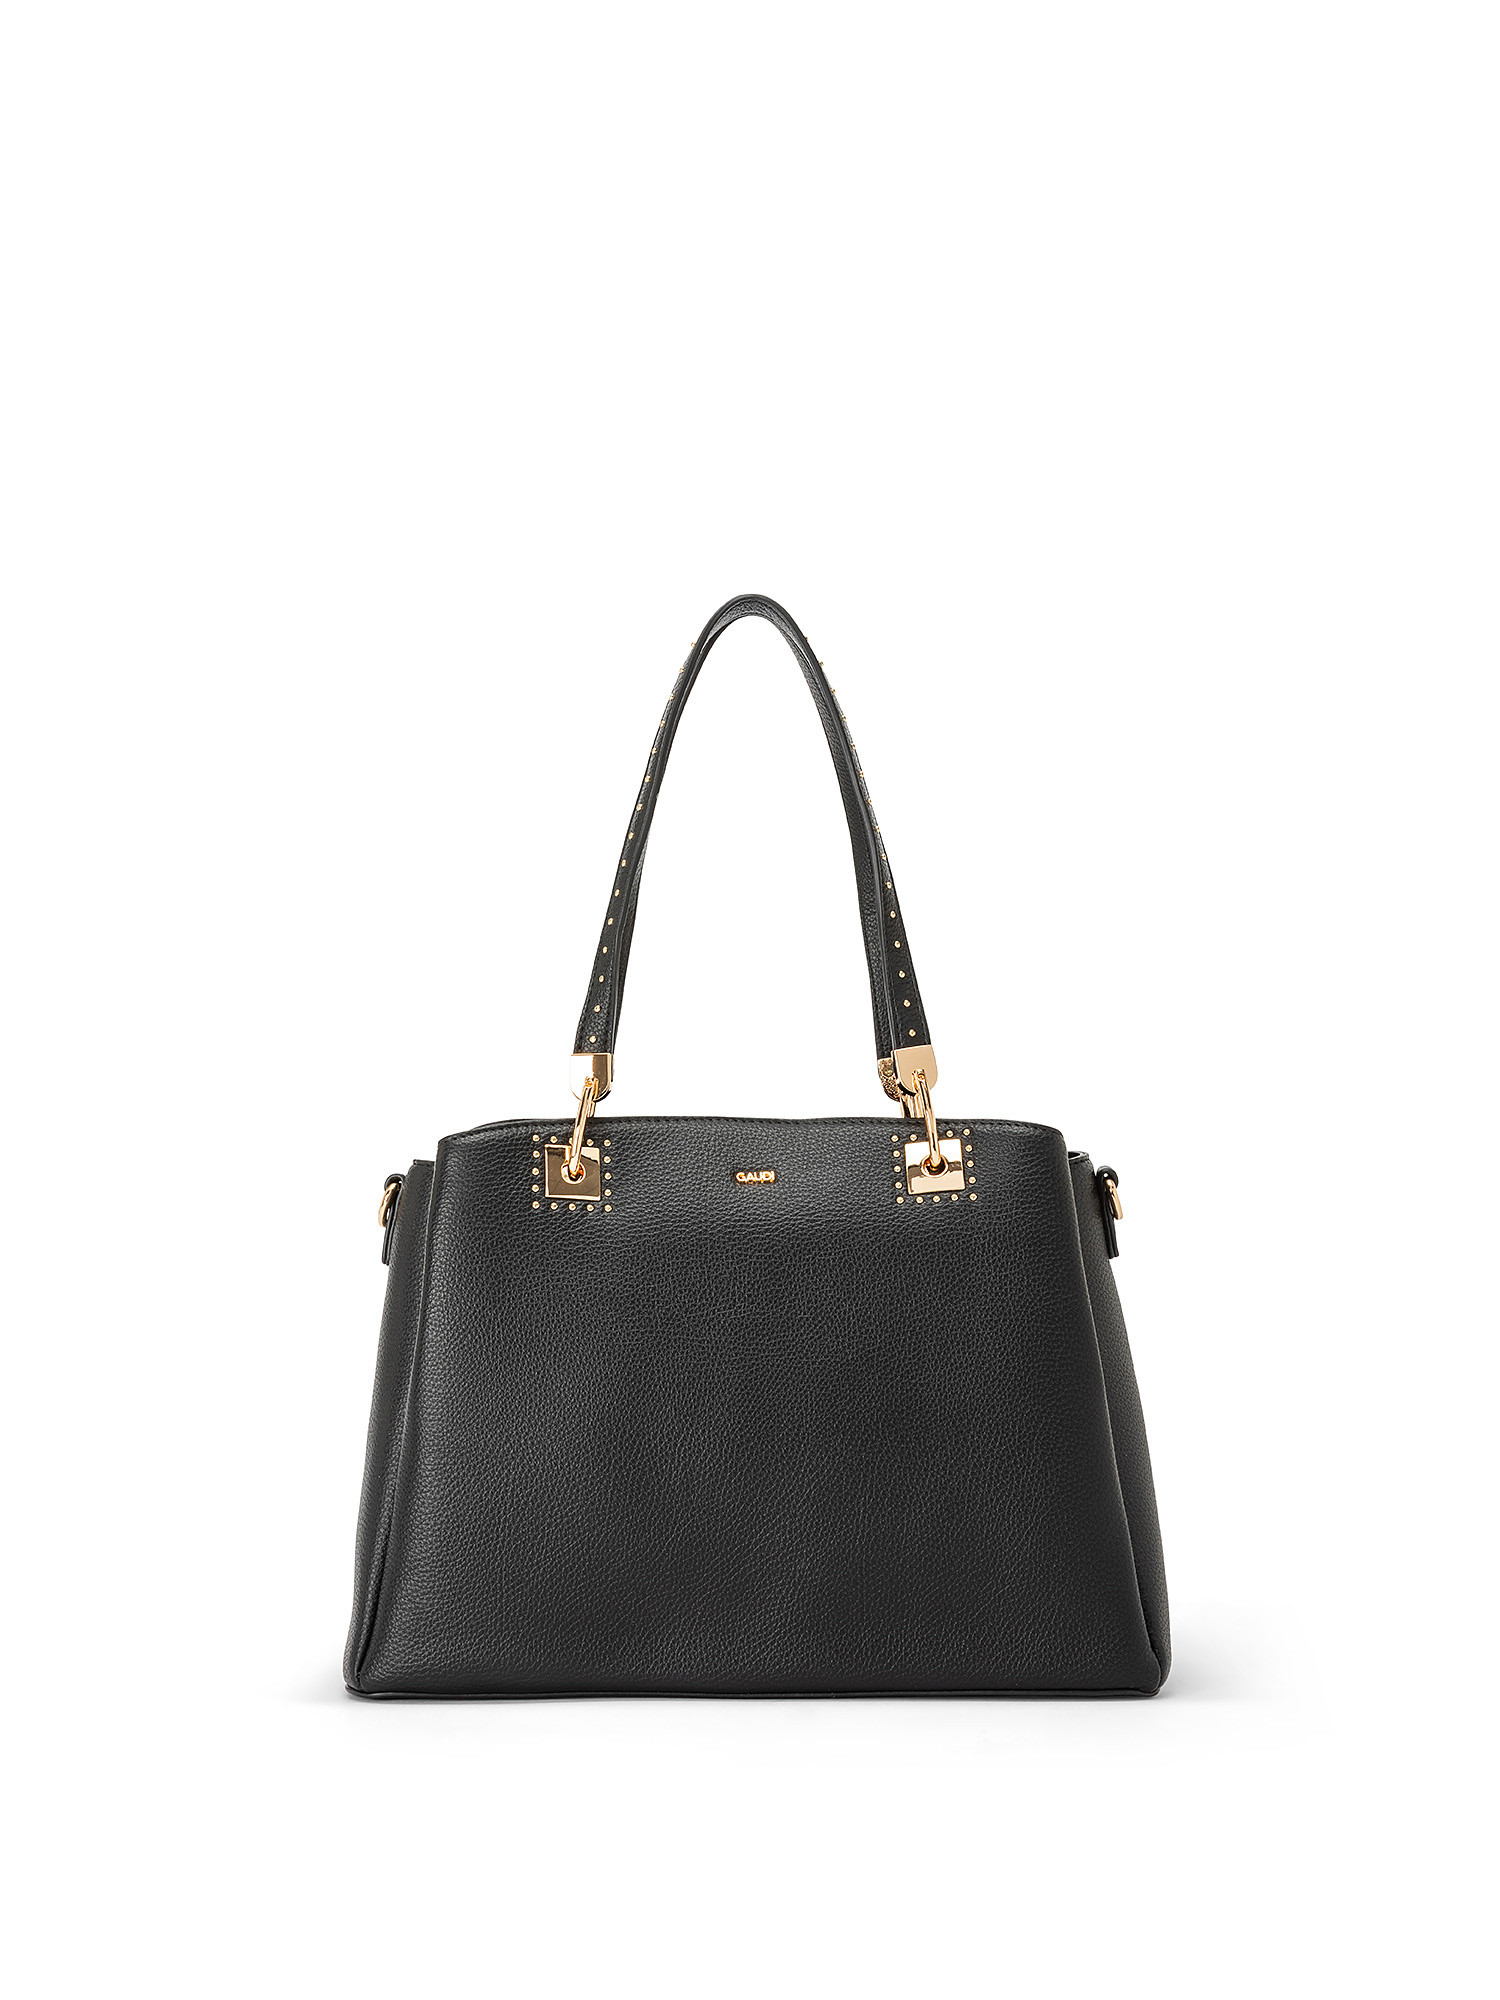 Gaudì - Shopping bag Aurora, Black, large image number 0